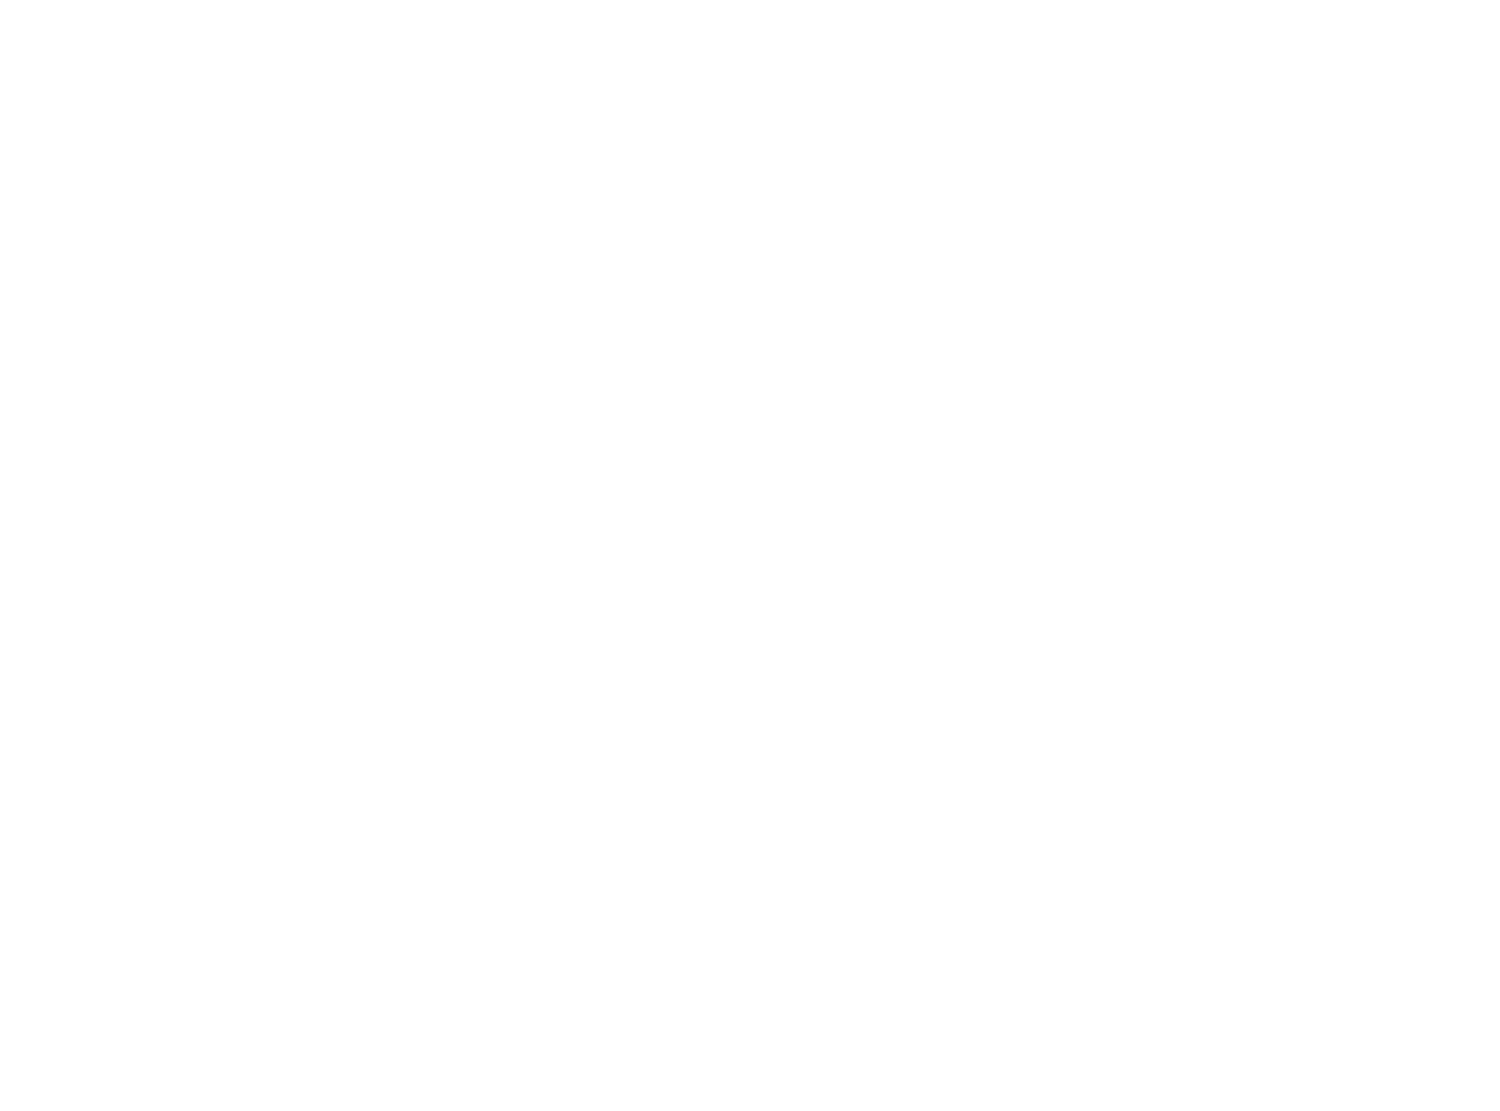 Bosek Fitness Coaching